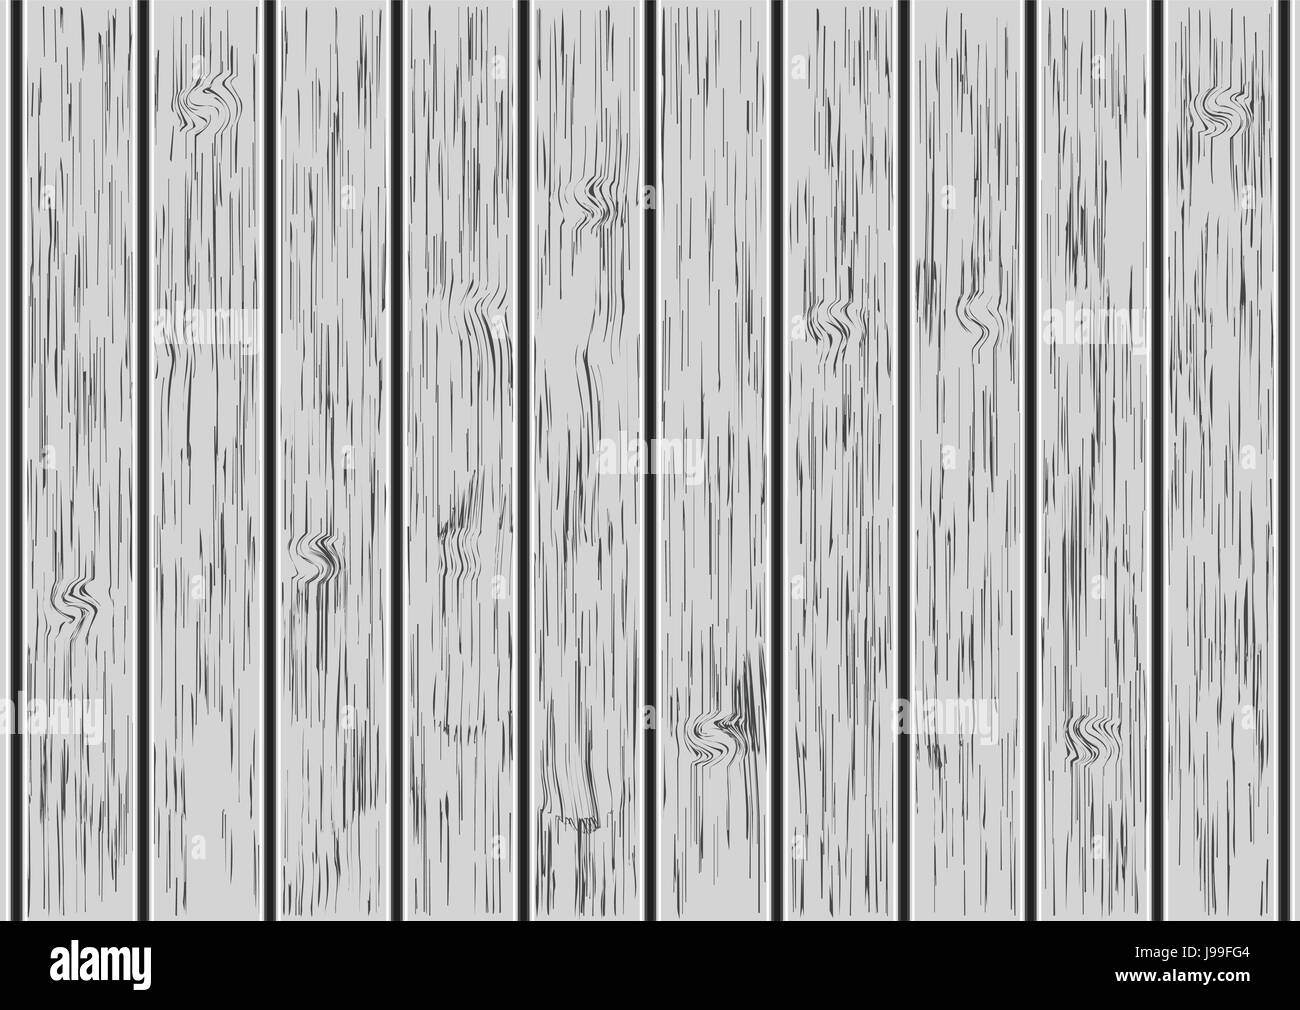 Holzbrett, grau weiße Wand im Hintergrund, Vector Illustration Stock Vektor